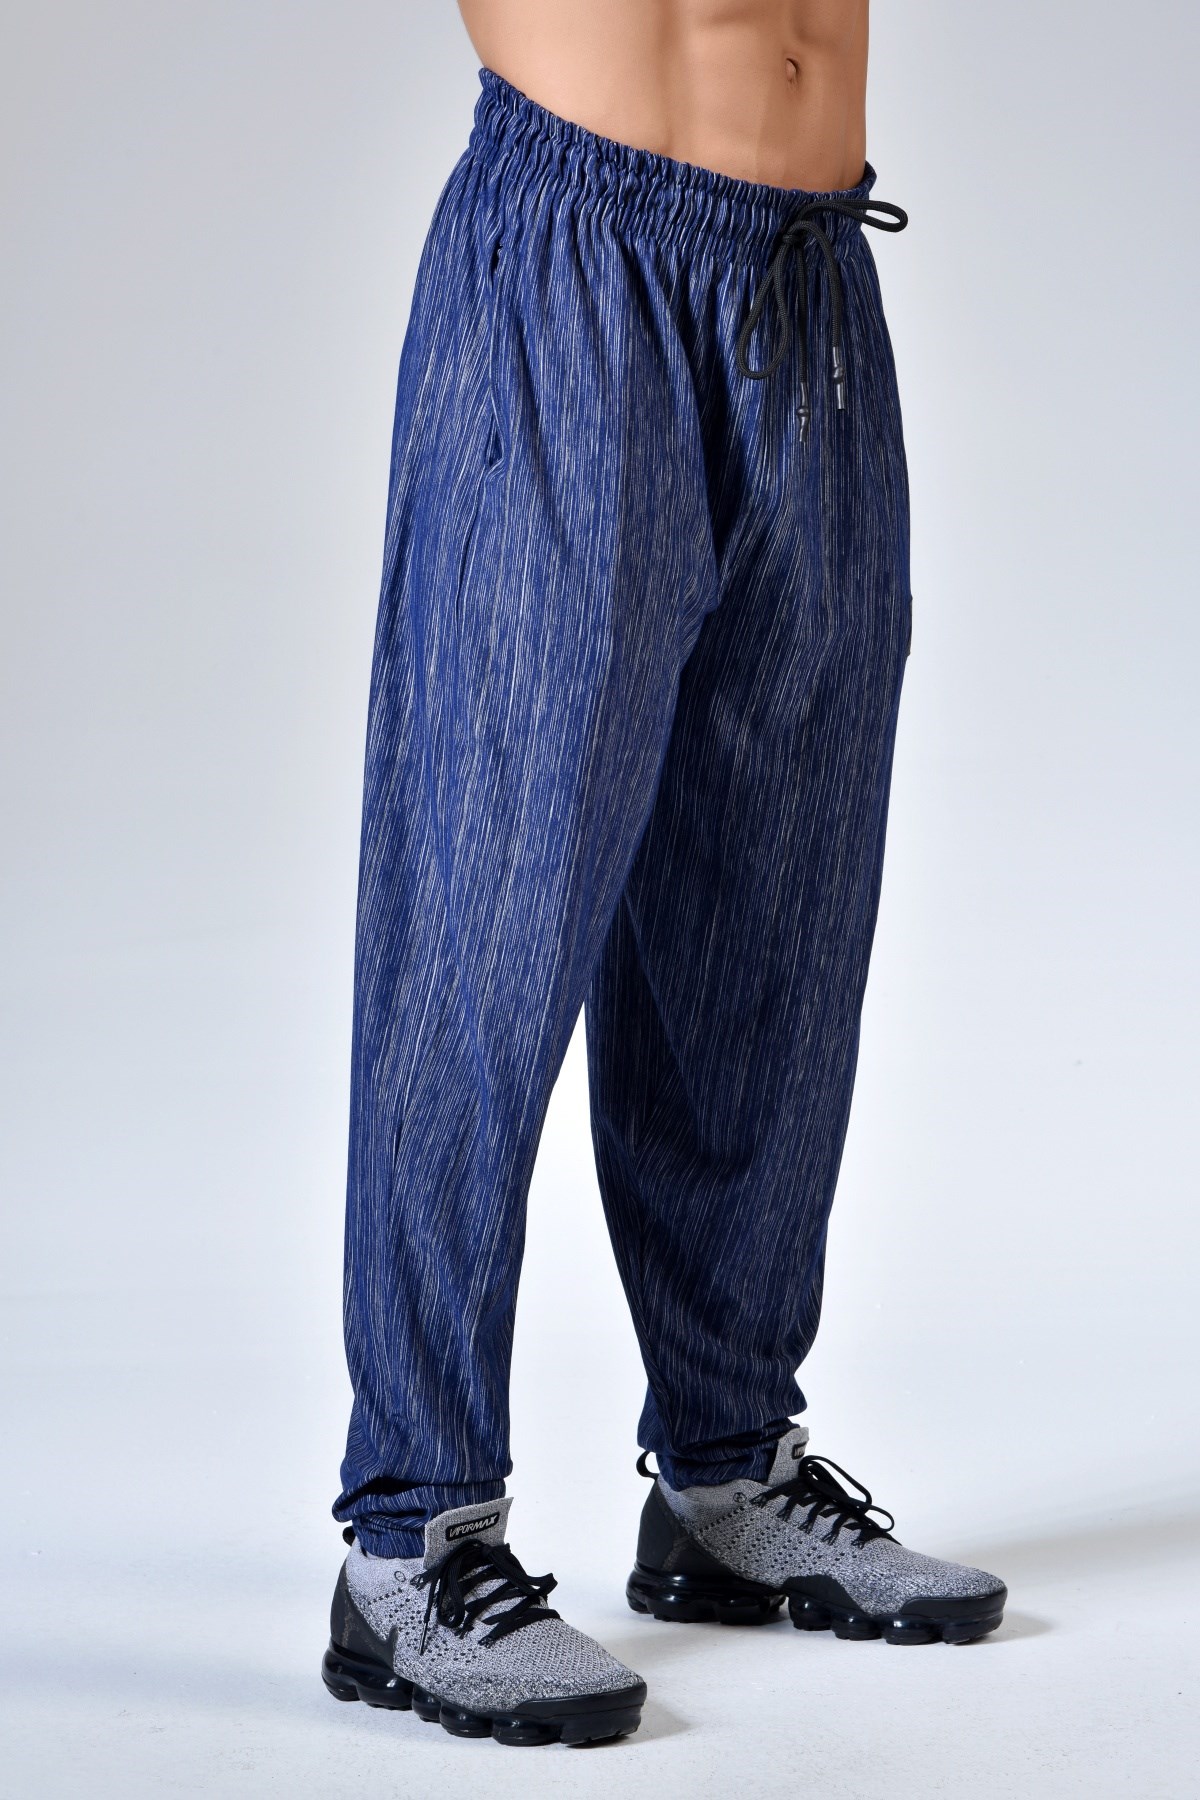 Nima loose-fit cotton pants for women, havana color | Dondup